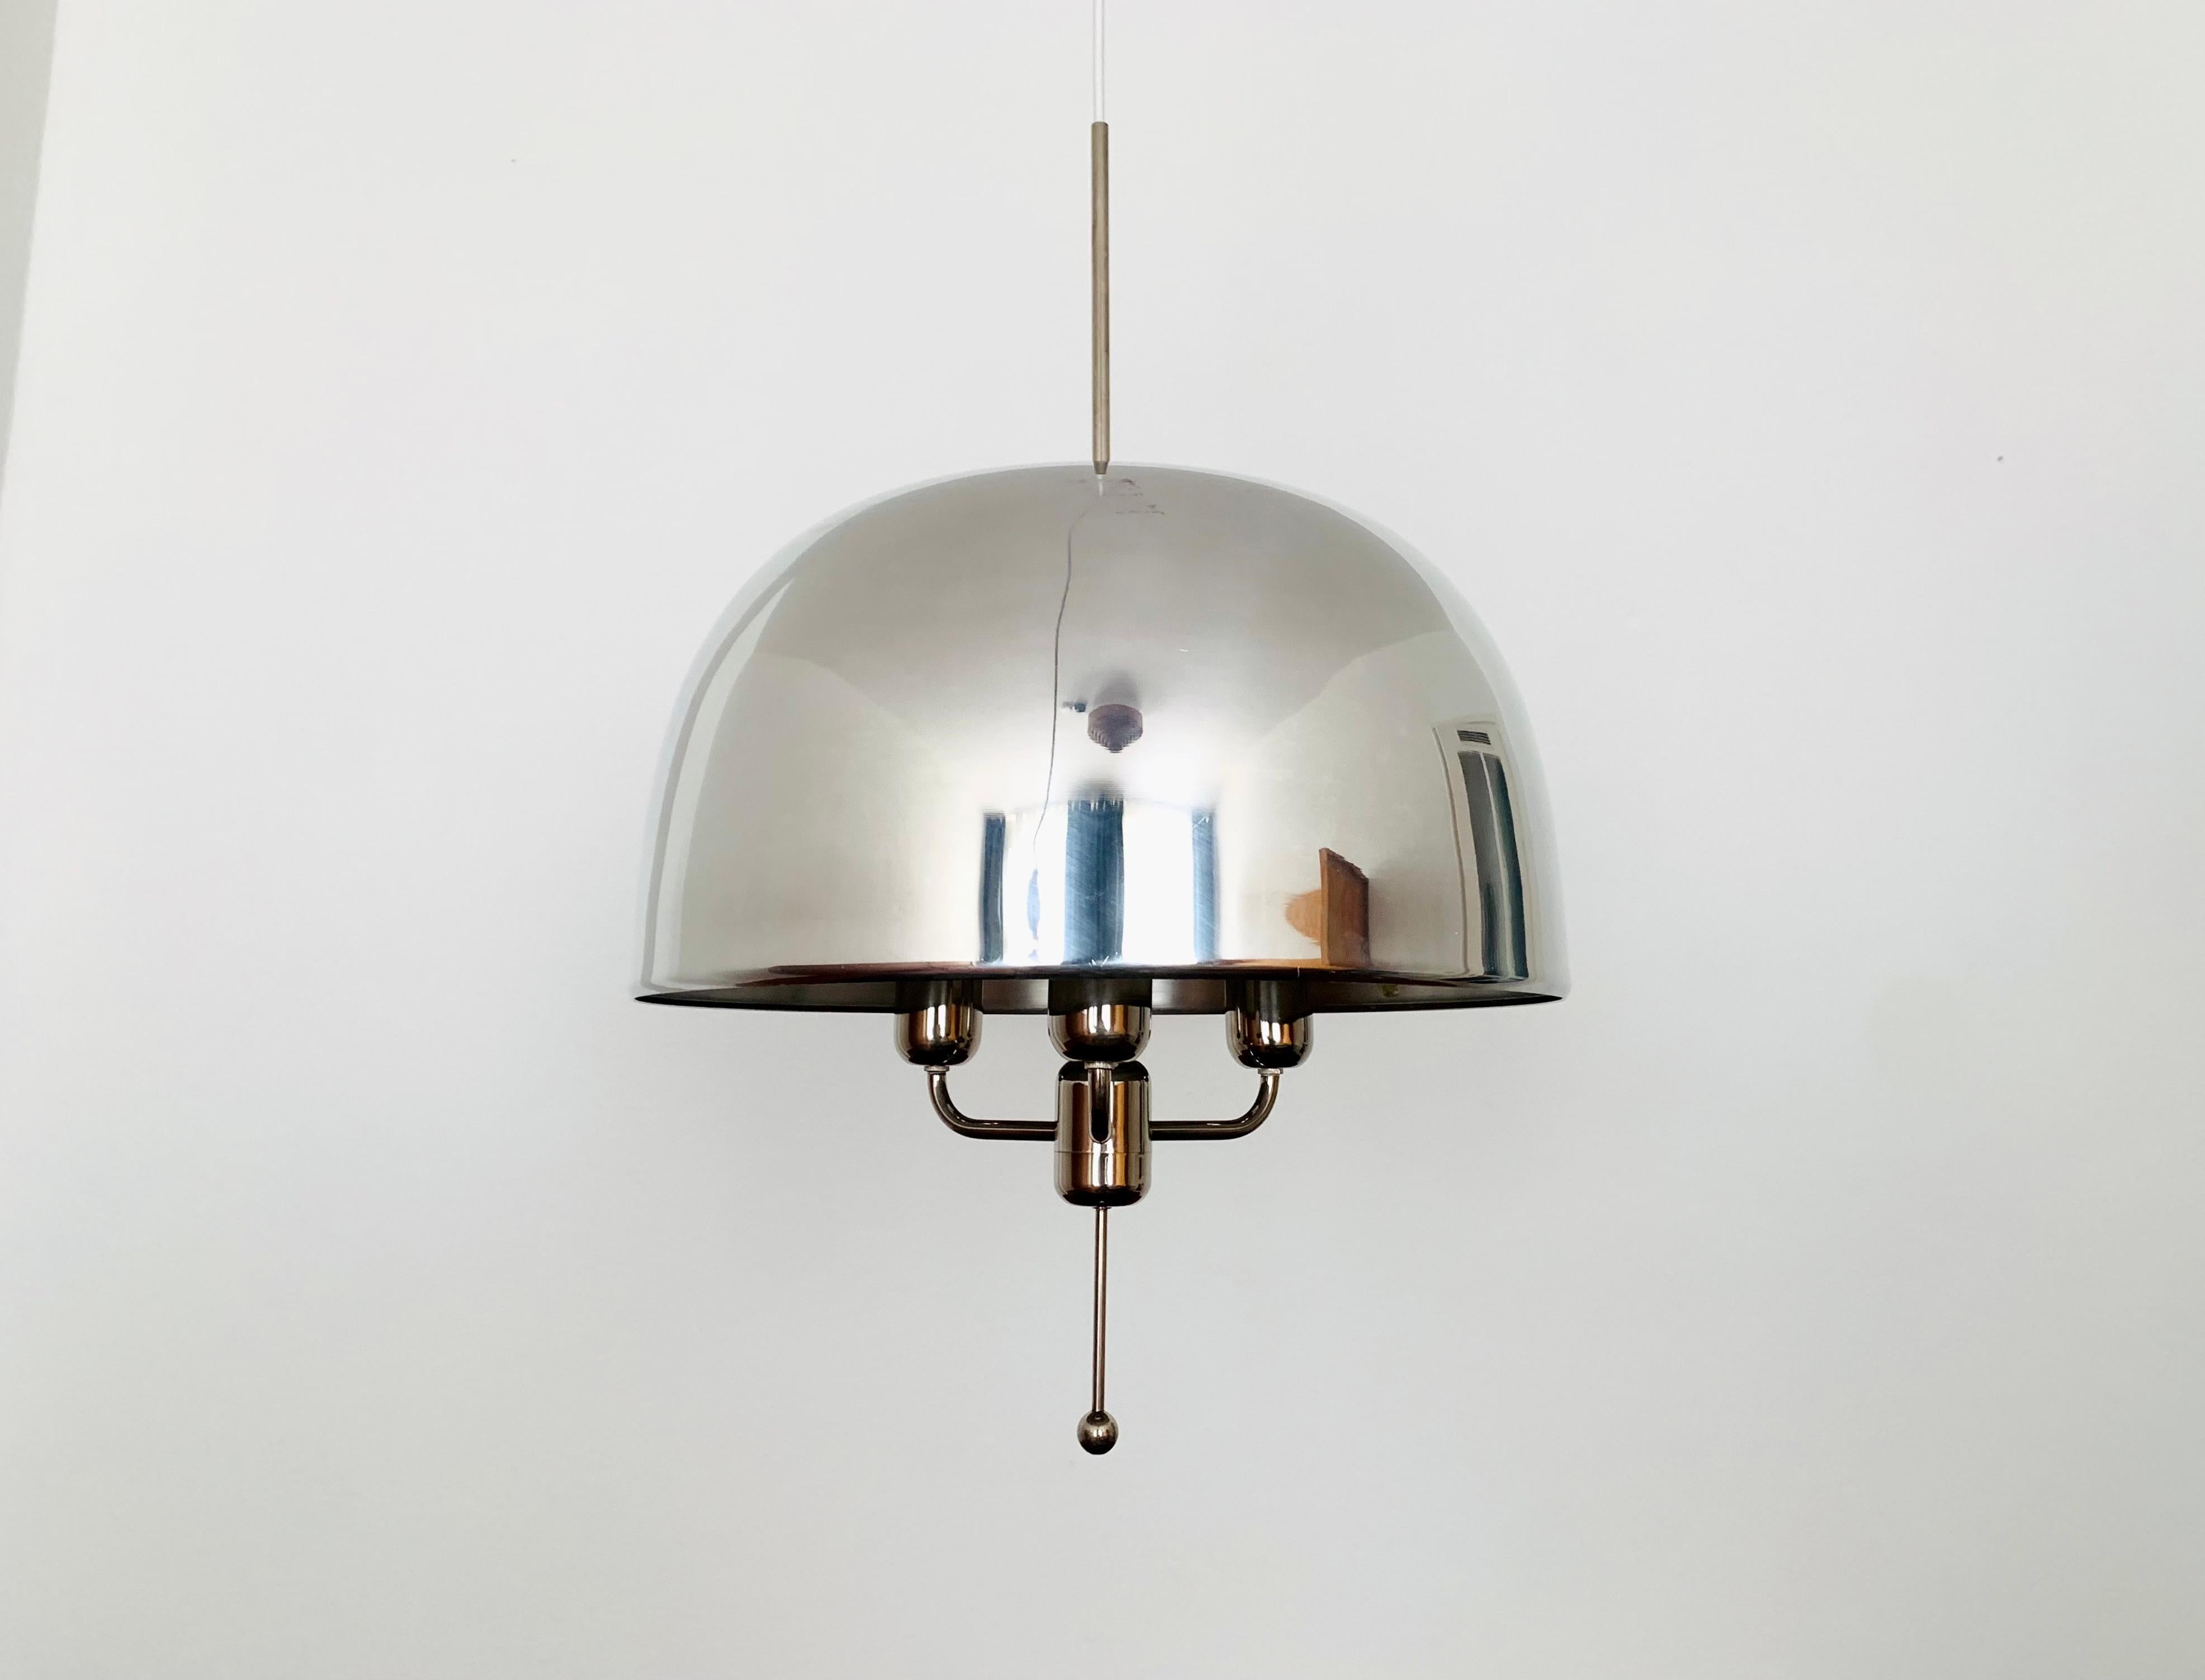 Merveilleuse et très rare lampe suspendue suédoise des années 1960.
La lampe avec l'abat-jour flottant est un véritable atout et un favori absolu pour chaque maison.
Une lumière très agréable et chaleureuse est créée.

Fabricant : Markaryd AB